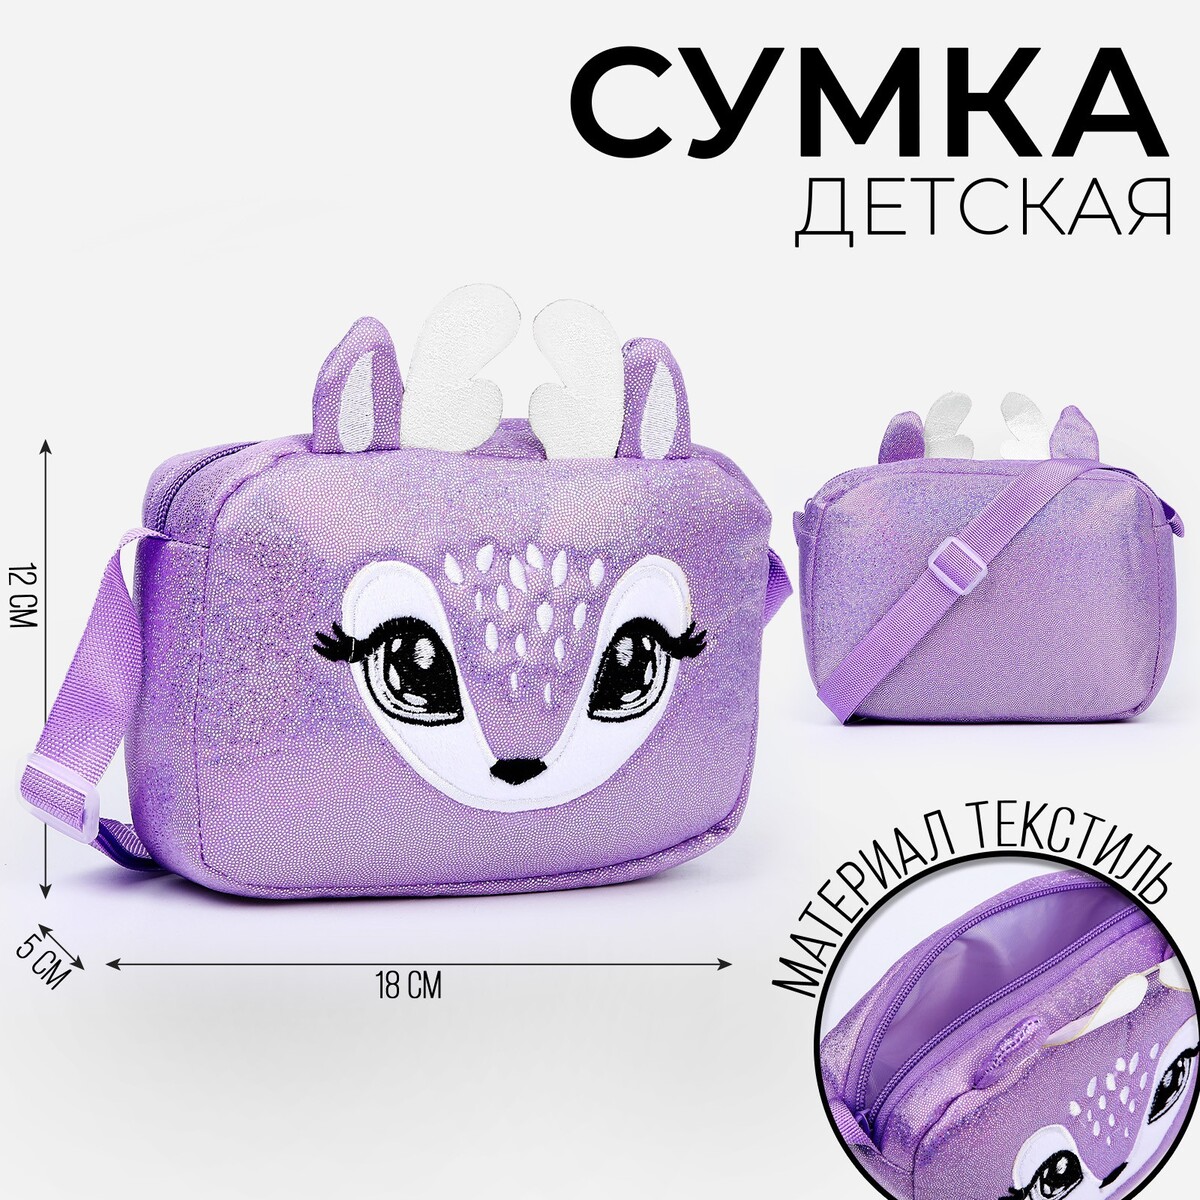 Сумка детская на молнии, длинный ремень, цвет фиолетовый сумка на кроватку корзинка на кроватку фиолетовый